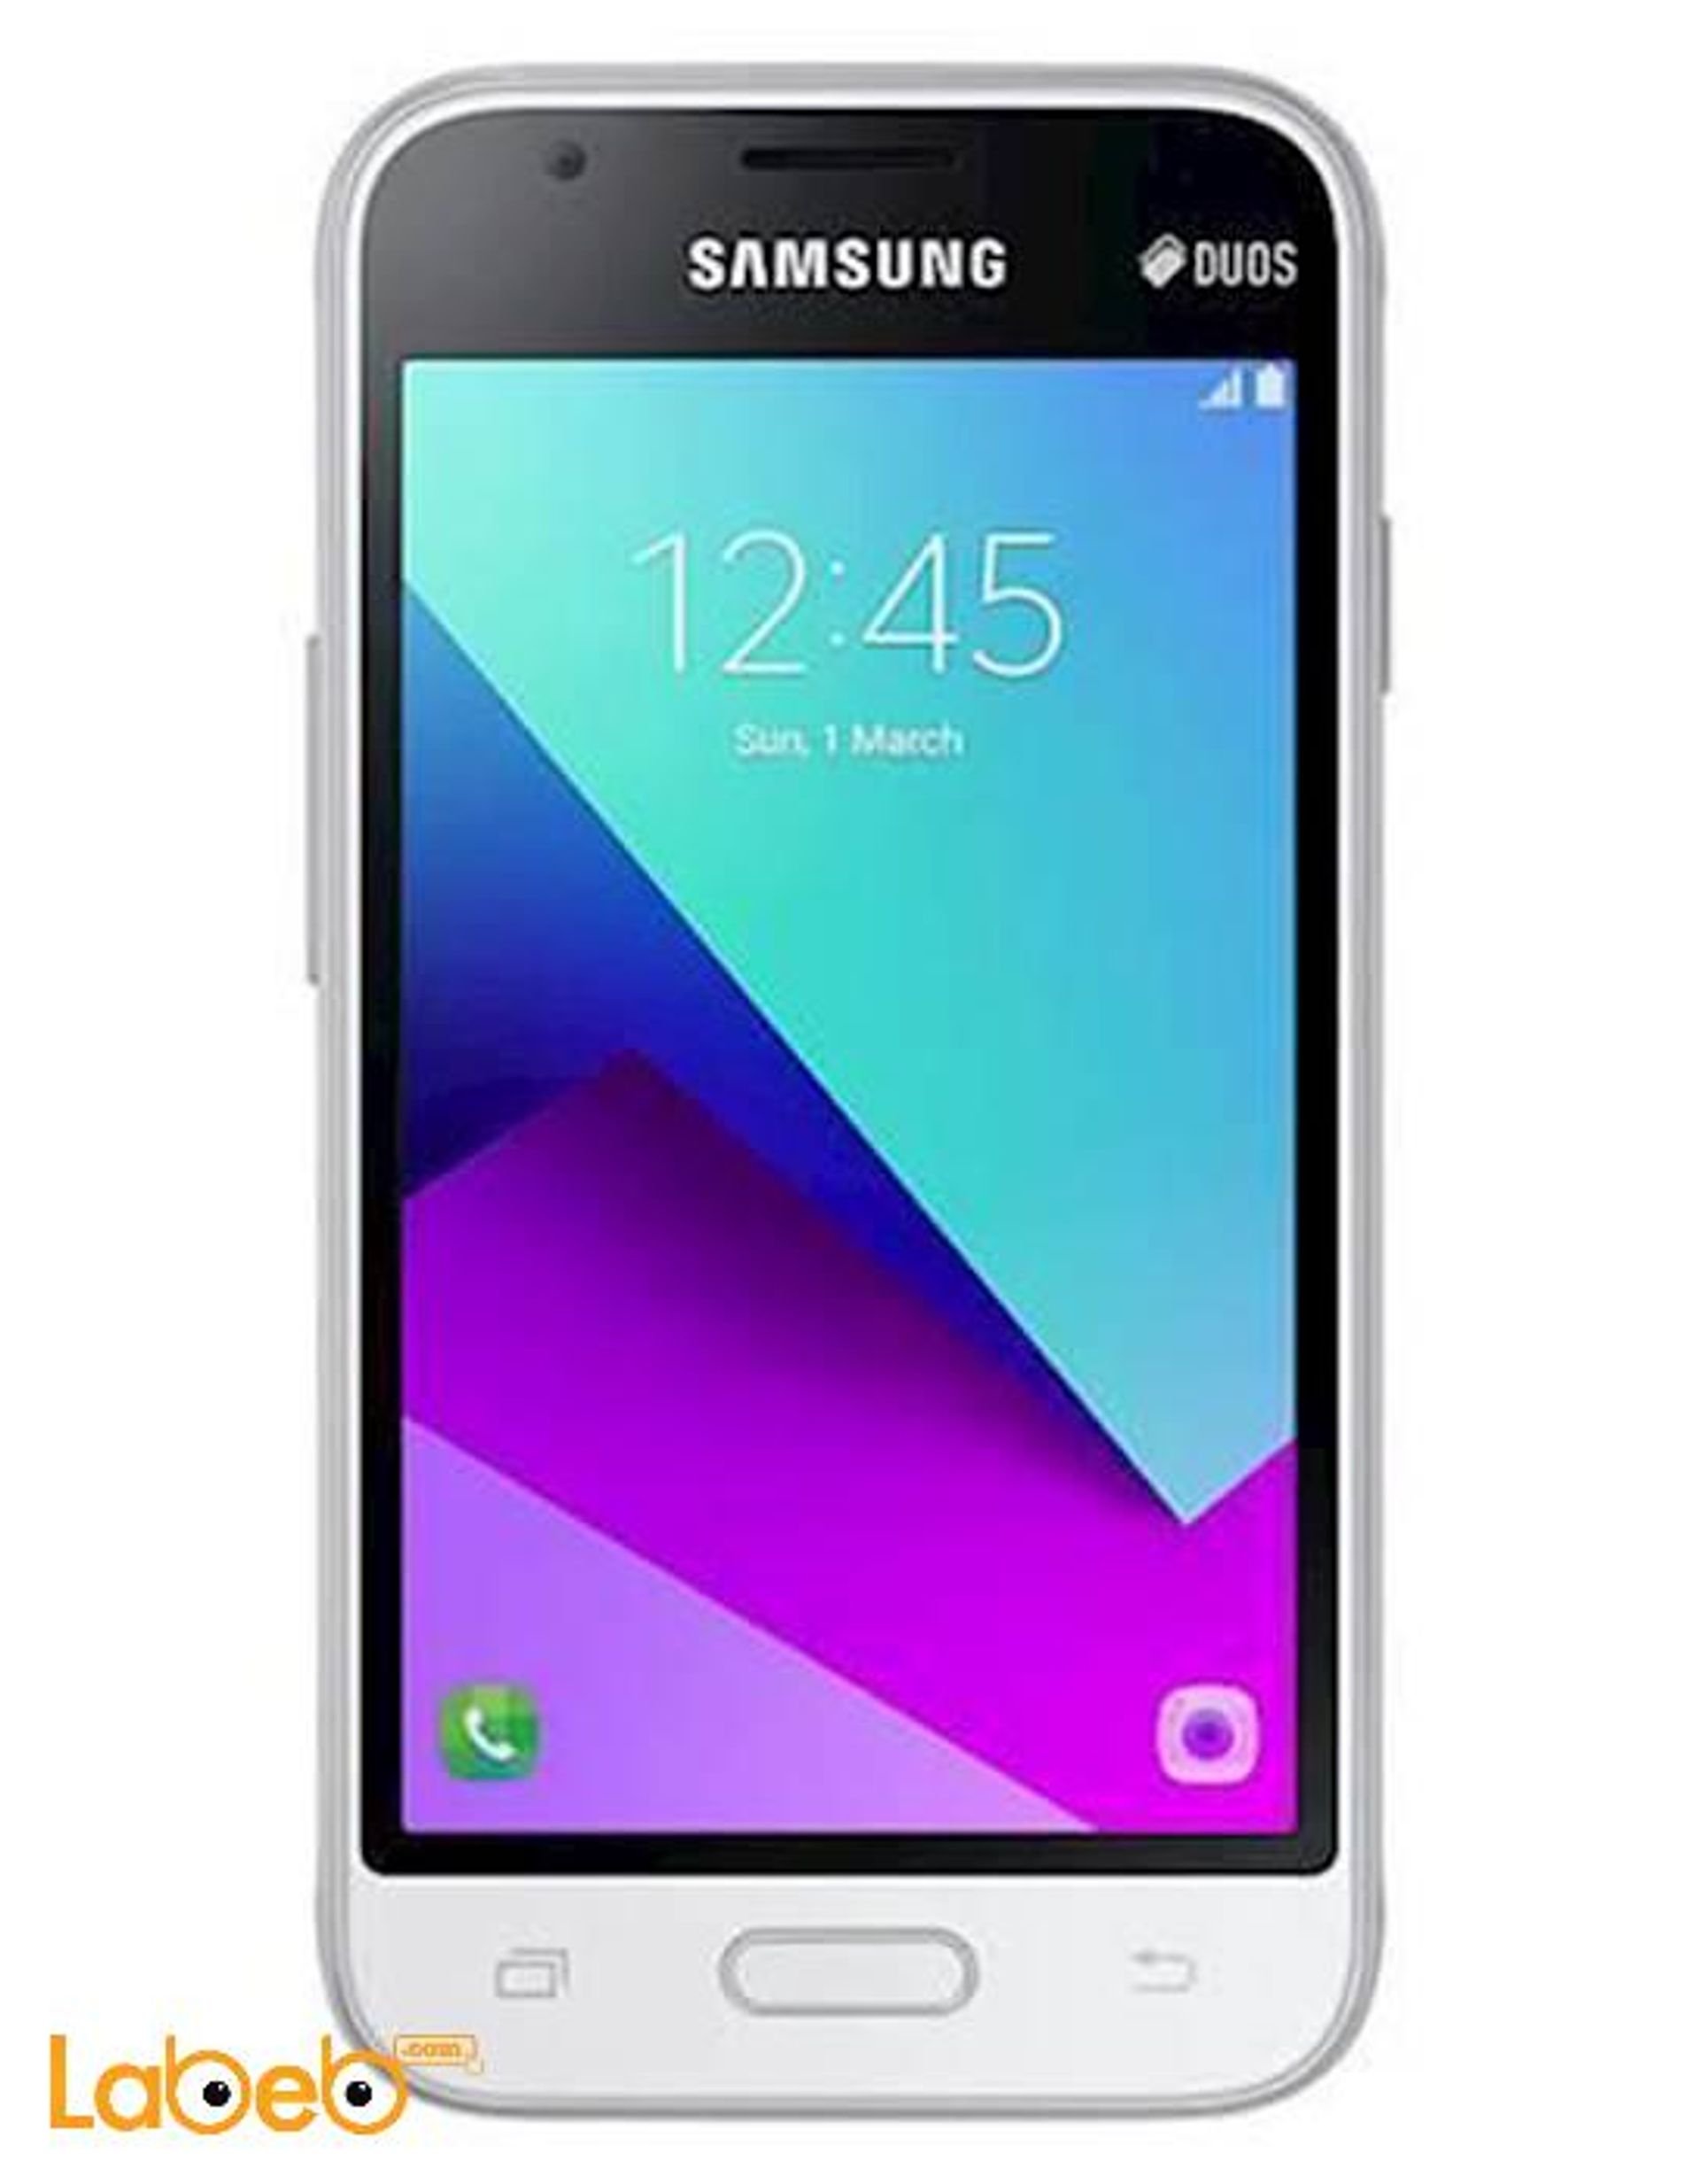 Купить телефон j1. Samsung j1 Mini. Самсунг галакси j1 Mini. Смартфон Samsung Galaxy j1. Samsung SM-j106f.